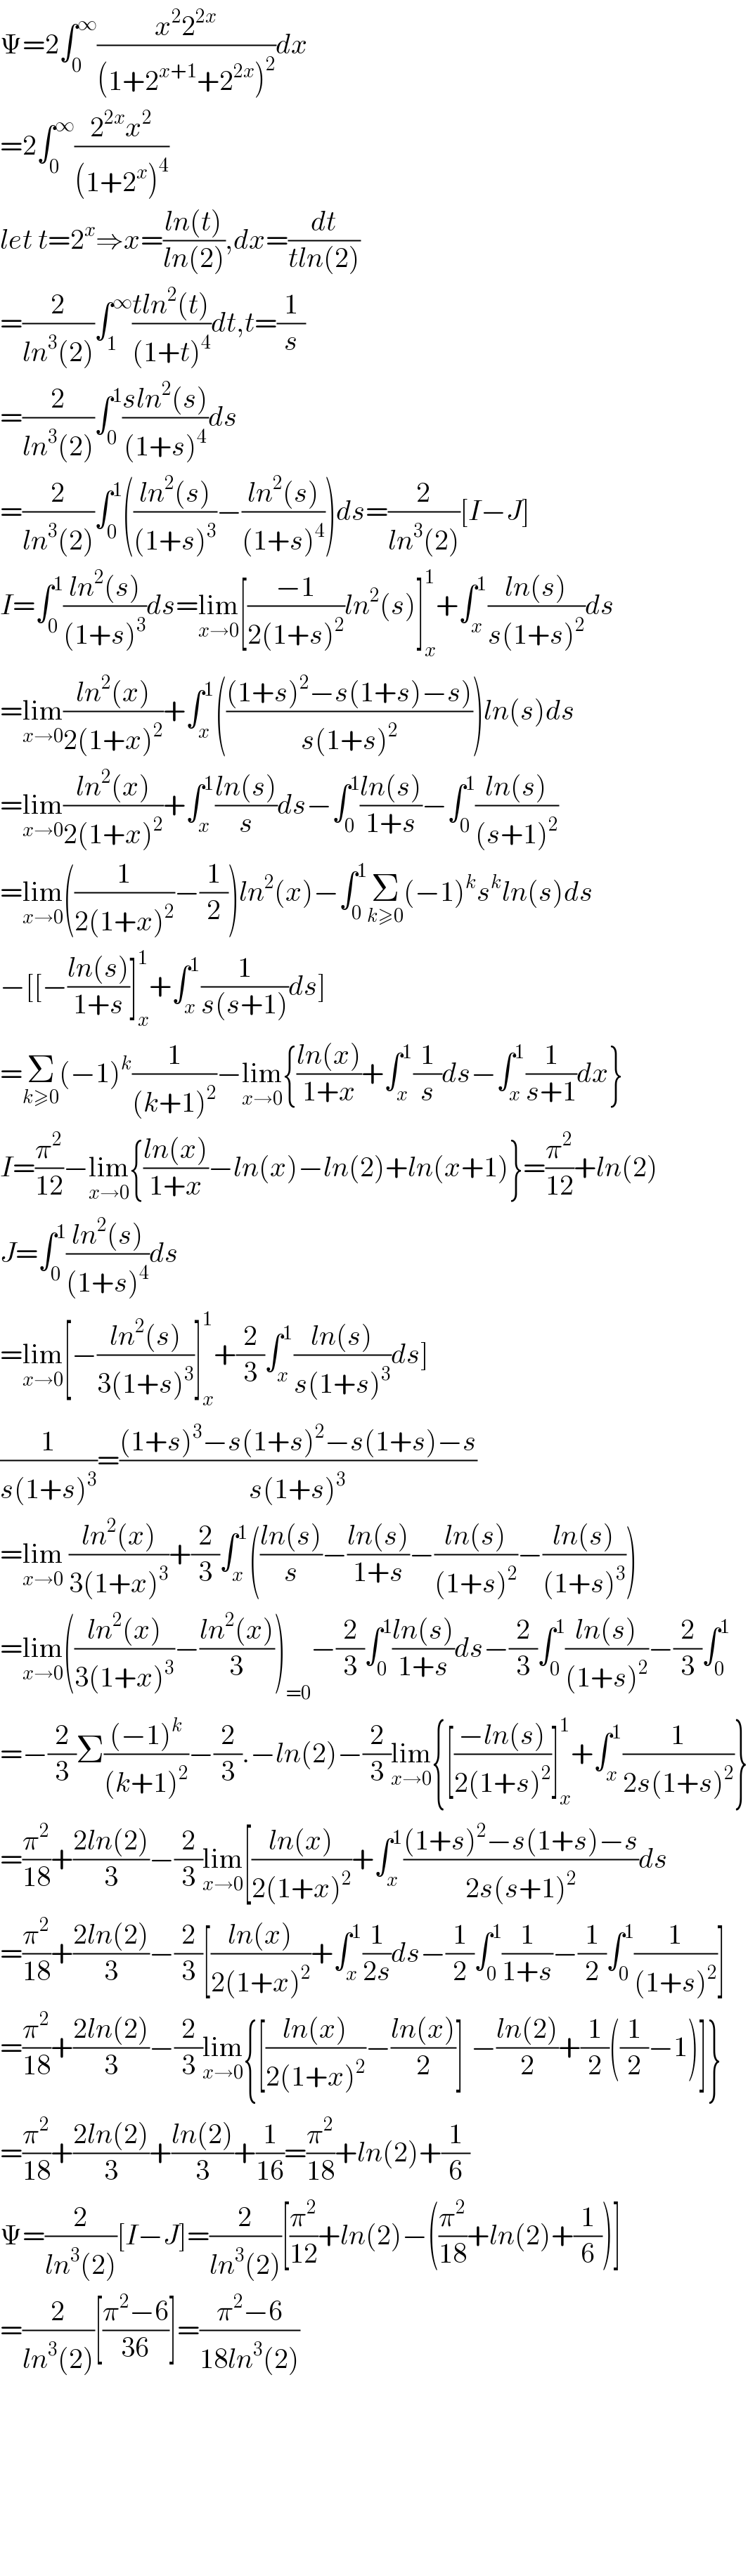 Ψ=2∫_0 ^∞ ((x^2 2^(2x) )/((1+2^(x+1) +2^(2x) )^2 ))dx  =2∫_0 ^∞ ((2^(2x) x^2 )/((1+2^x )^4 ))   let t=2^x ⇒x=((ln(t))/(ln(2))),dx=(dt/(tln(2)))  =(2/(ln^3 (2)))∫_1 ^∞ ((tln^2 (t))/((1+t)^4 ))dt,t=(1/s)  =(2/(ln^3 (2)))∫_0 ^1 ((sln^2 (s))/((1+s)^4 ))ds  =(2/(ln^3 (2)))∫_0 ^1 (((ln^2 (s))/((1+s)^3 ))−((ln^2 (s))/((1+s)^4 )))ds=(2/(ln^3 (2)))[I−J]  I=∫_0 ^1 ((ln^2 (s))/((1+s)^3 ))ds=lim_(x→0) [((−1)/(2(1+s)^2 ))ln^2 (s)]_x ^1 +∫_x ^1 ((ln(s))/(s(1+s)^2 ))ds  =lim_(x→0) ((ln^2 (x))/(2(1+x)^2 ))+∫_x ^1 ((((1+s)^2 −s(1+s)−s))/(s(1+s)^2 )))ln(s)ds  =lim_(x→0) ((ln^2 (x))/(2(1+x)^2 ))+∫_x ^1 ((ln(s))/s)ds−∫_0 ^1 ((ln(s))/(1+s))−∫_0 ^1 ((ln(s))/((s+1)^2 ))  =lim_(x→0) ((1/(2(1+x)^2 ))−(1/2))ln^2 (x)−∫_0 ^1 Σ_(k≥0) (−1)^k s^k ln(s)ds  −[[−((ln(s))/(1+s))]_x ^1 +∫_x ^1 (1/(s(s+1)))ds]  =Σ_(k≥0) (−1)^k (1/((k+1)^2 ))−lim_(x→0) {((ln(x))/(1+x))+∫_x ^1 (1/s)ds−∫_x ^1 (1/(s+1))dx}  I=(π^2 /(12))−lim_(x→0) {((ln(x))/(1+x))−ln(x)−ln(2)+ln(x+1)}=(π^2 /(12))+ln(2)  J=∫_0 ^1 ((ln^2 (s))/((1+s)^4 ))ds  =lim_(x→0) [−((ln^2 (s))/(3(1+s)^3 ))]_x ^1 +(2/3)∫_x ^1 ((ln(s))/(s(1+s)^3 ))ds]  (1/(s(1+s)^3 ))=(((1+s)^3 −s(1+s)^2 −s(1+s)−s)/(s(1+s)^3 ))  =lim_(x→0)  ((ln^2 (x))/(3(1+x)^3 ))+(2/3)∫_x ^1 (((ln(s))/s)−((ln(s))/(1+s))−((ln(s))/((1+s)^2 ))−((ln(s))/((1+s)^3 )))  =lim_(x→0) (((ln^2 (x))/(3(1+x)^3 ))−((ln^2 (x))/3))_(=0) −(2/3)∫_0 ^1 ((ln(s))/(1+s))ds−(2/3)∫_0 ^1 ((ln(s))/((1+s)^2 ))−(2/3)∫_0 ^1   =−(2/3)Σ(((−1)^k )/((k+1)^2 ))−(2/3).−ln(2)−(2/3)lim_(x→0) {[((−ln(s))/(2(1+s)^2 ))]_x ^1 +∫_x ^1 (1/(2s(1+s)^2 ))}  =(π^2 /(18))+((2ln(2))/3)−(2/3)lim_(x→0) [((ln(x))/(2(1+x)^2 ))+∫_x ^1 (((1+s)^2 −s(1+s)−s)/(2s(s+1)^2 ))ds  =(π^2 /(18))+((2ln(2))/3)−(2/3)[((ln(x))/(2(1+x)^2 ))+∫_x ^1 (1/(2s))ds−(1/2)∫_0 ^1 (1/(1+s))−(1/2)∫_0 ^1 (1/((1+s)^2 ))]  =(π^2 /(18))+((2ln(2))/3)−(2/3)lim_(x→0) {[((ln(x))/(2(1+x)^2 ))−((ln(x))/2)]_ −((ln(2))/2)+(1/2)((1/2)−1)]}  =(π^2 /(18))+((2ln(2))/3)+((ln(2))/3)+(1/(16))=(π^2 /(18))+ln(2)+(1/6)  Ψ=(2/(ln^3 (2)))[I−J]=(2/(ln^3 (2)))[(π^2 /(12))+ln(2)−((π^2 /(18))+ln(2)+(1/6))]  =(2/(ln^3 (2)))[((π^2 −6)/(36))]=((π^2 −6)/(18ln^3 (2)))            